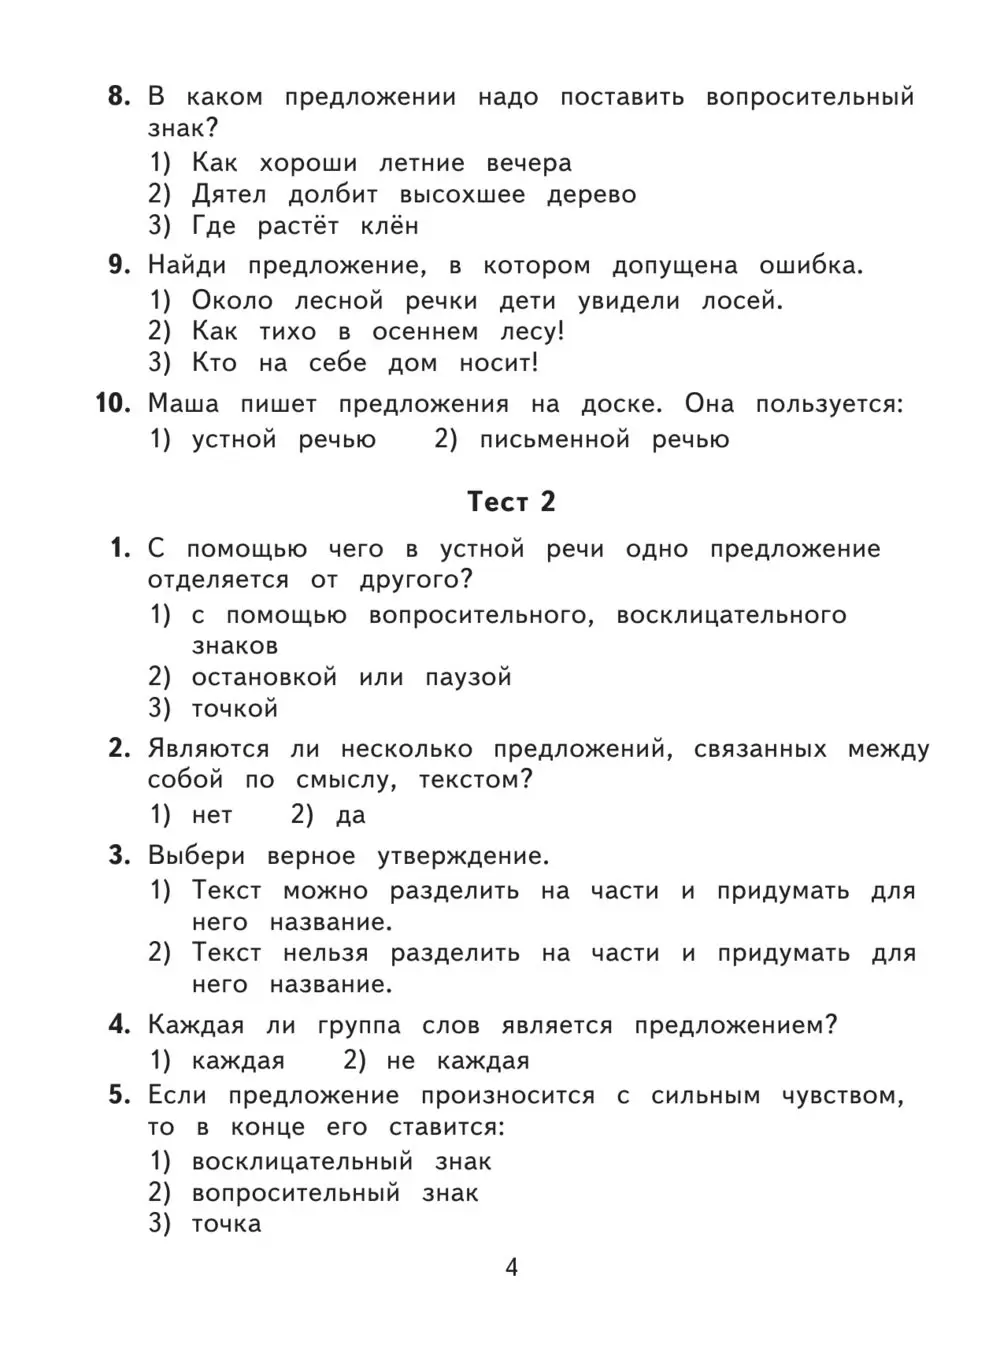 Основные правила по русскому языку за 3 класс: члены предложения